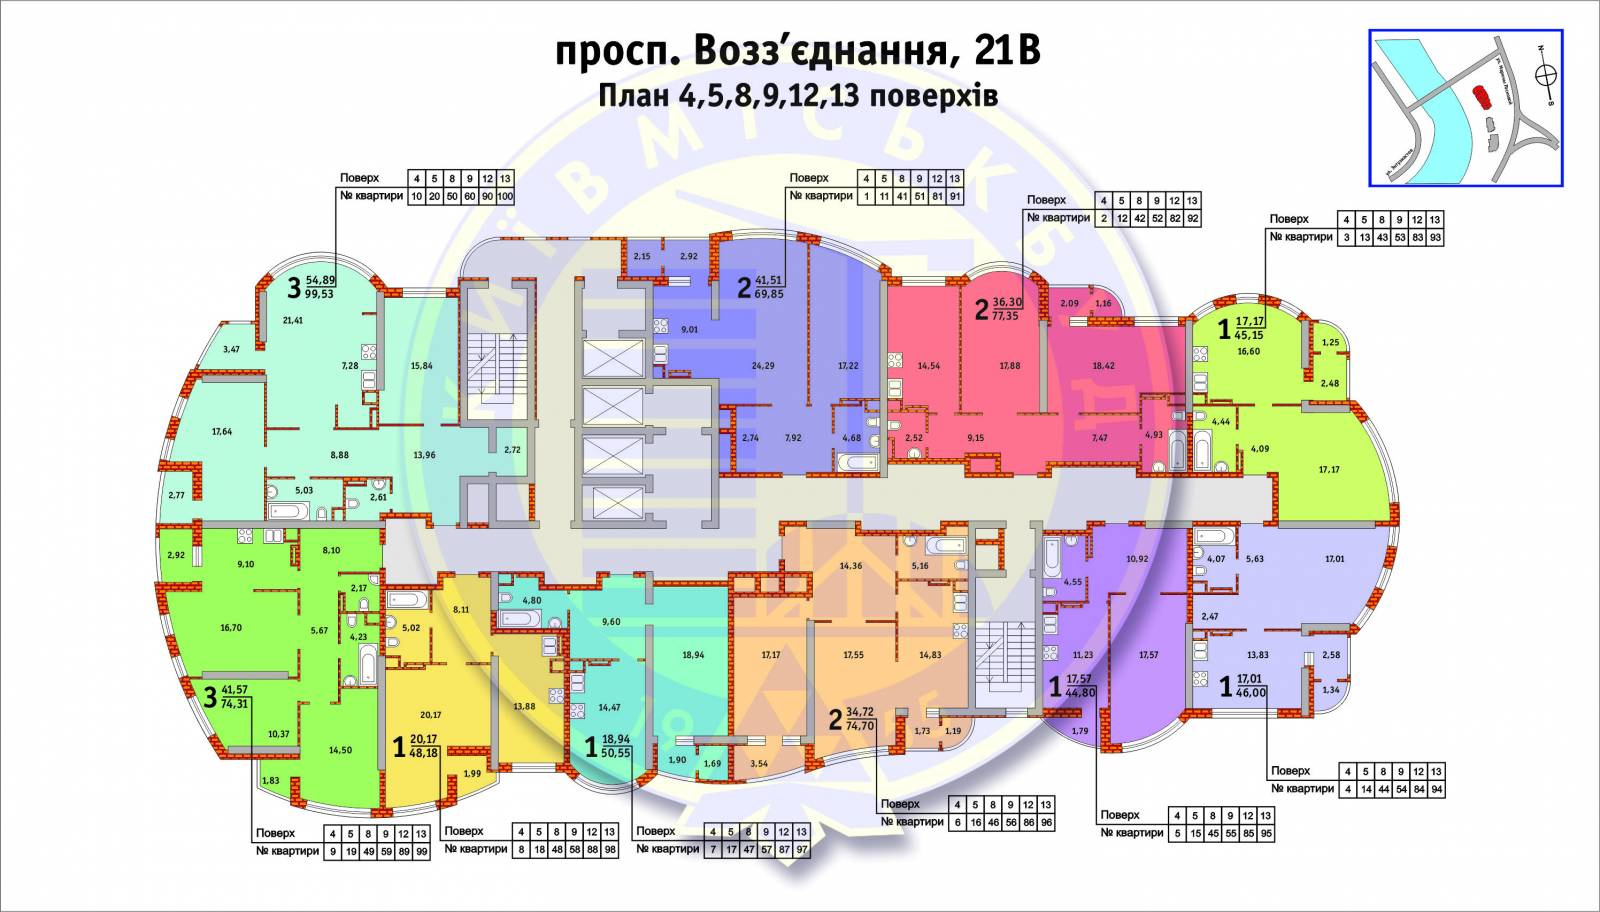 Поэтажный план Воссоединения 21в